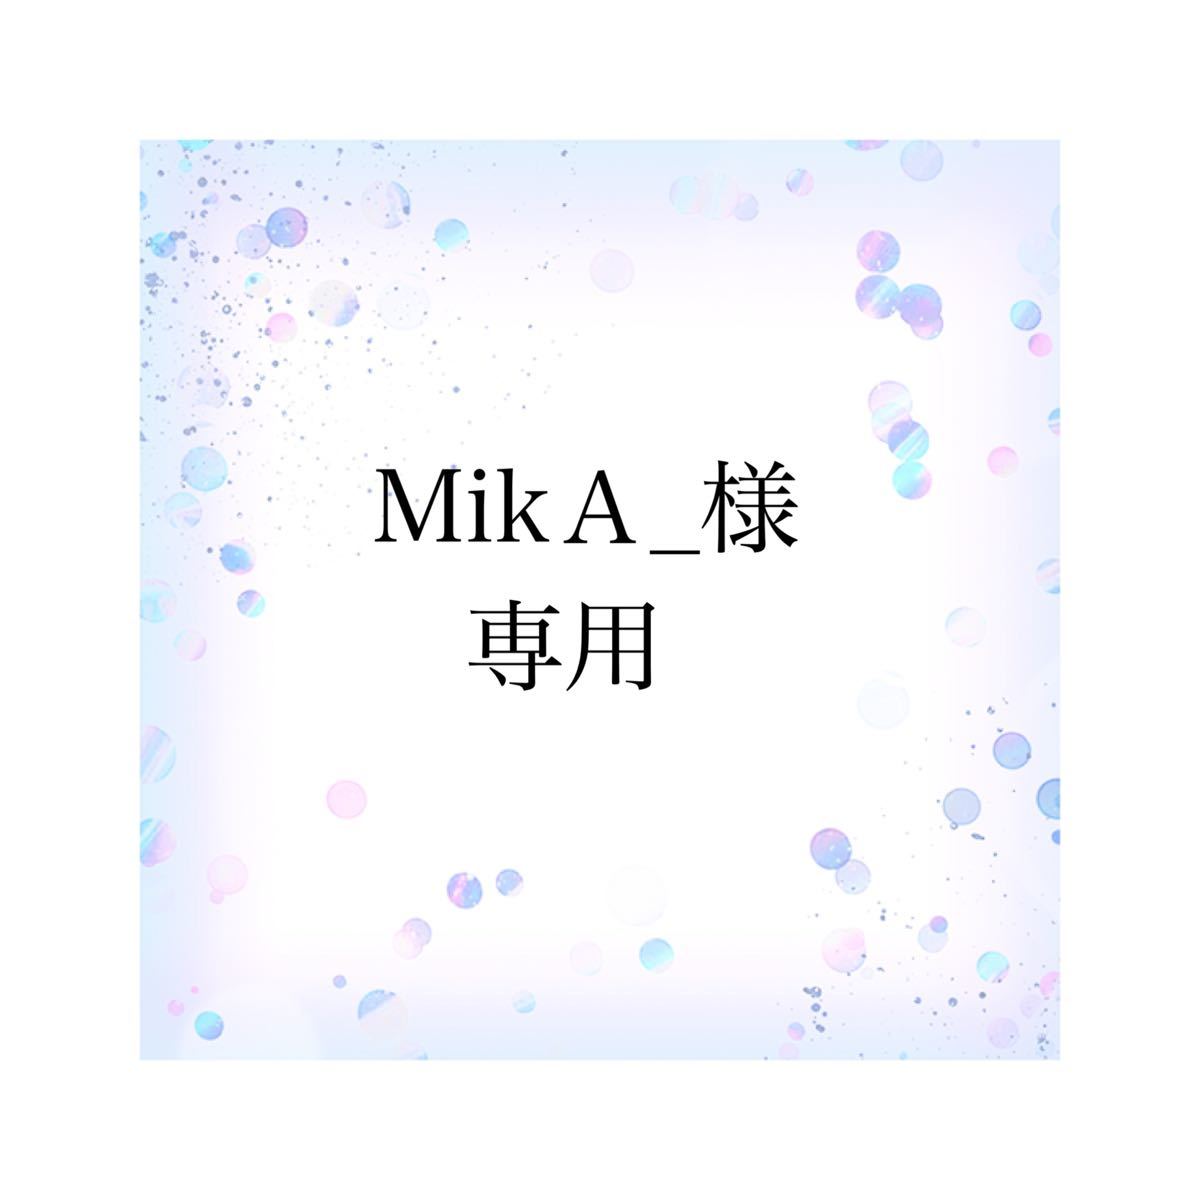 開店祝い 【Mika様 専用】 アート/写真 - zoopalic.com